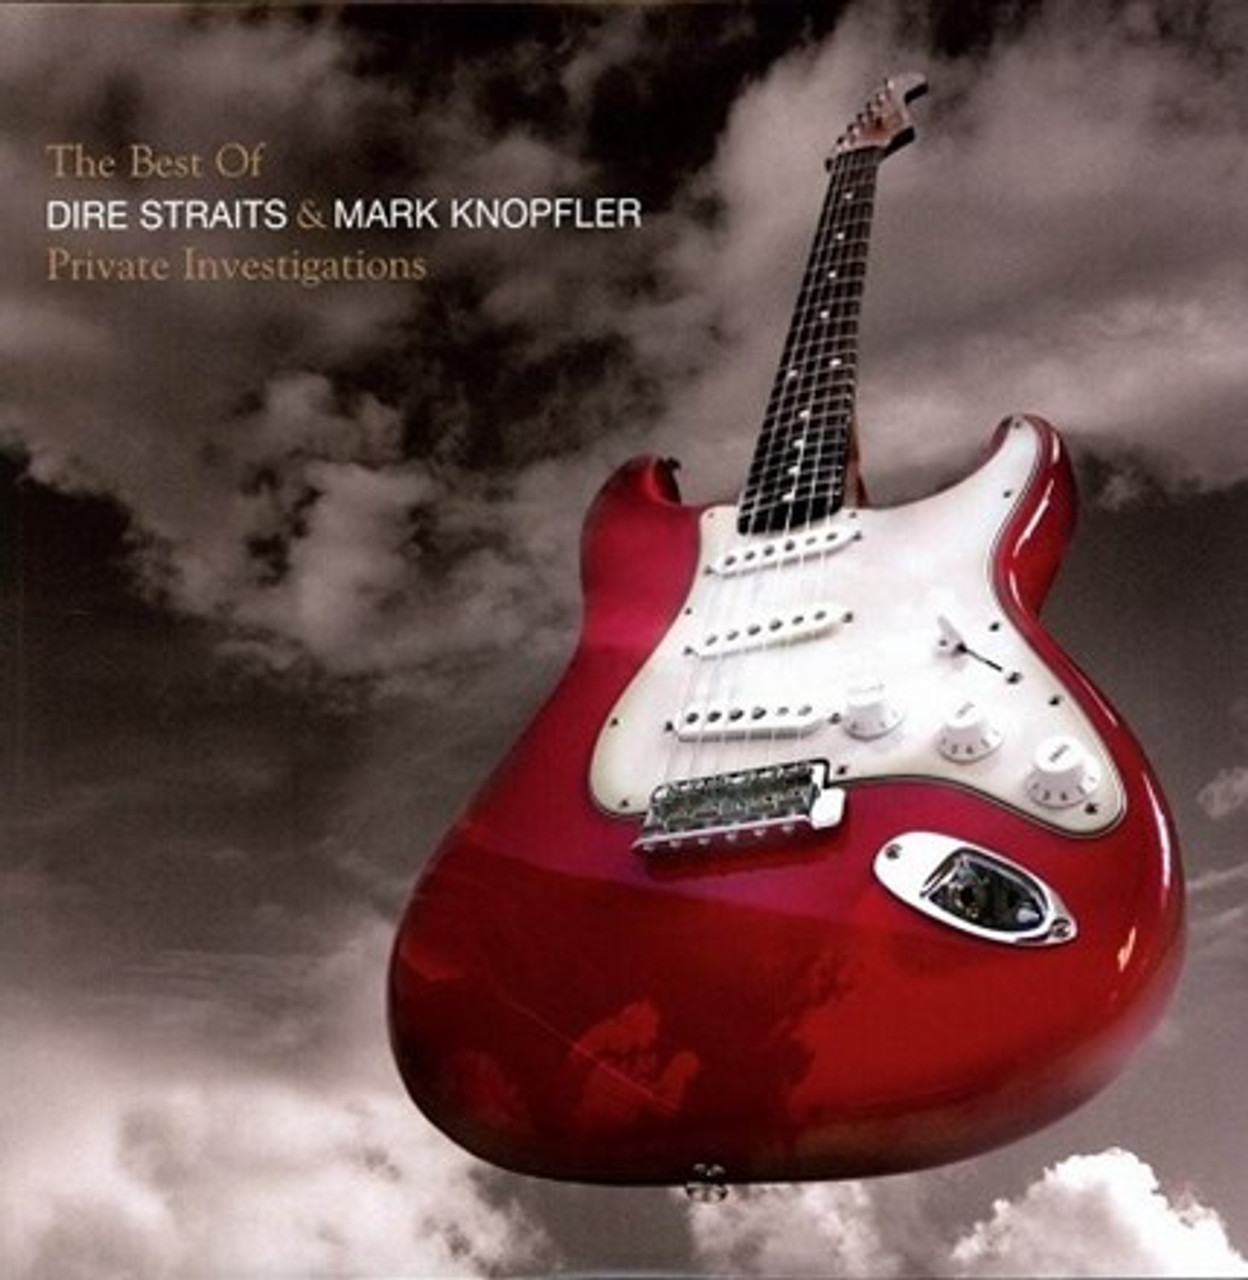 Dire Straits/Mark Knopfler - Best of -2 CD Album